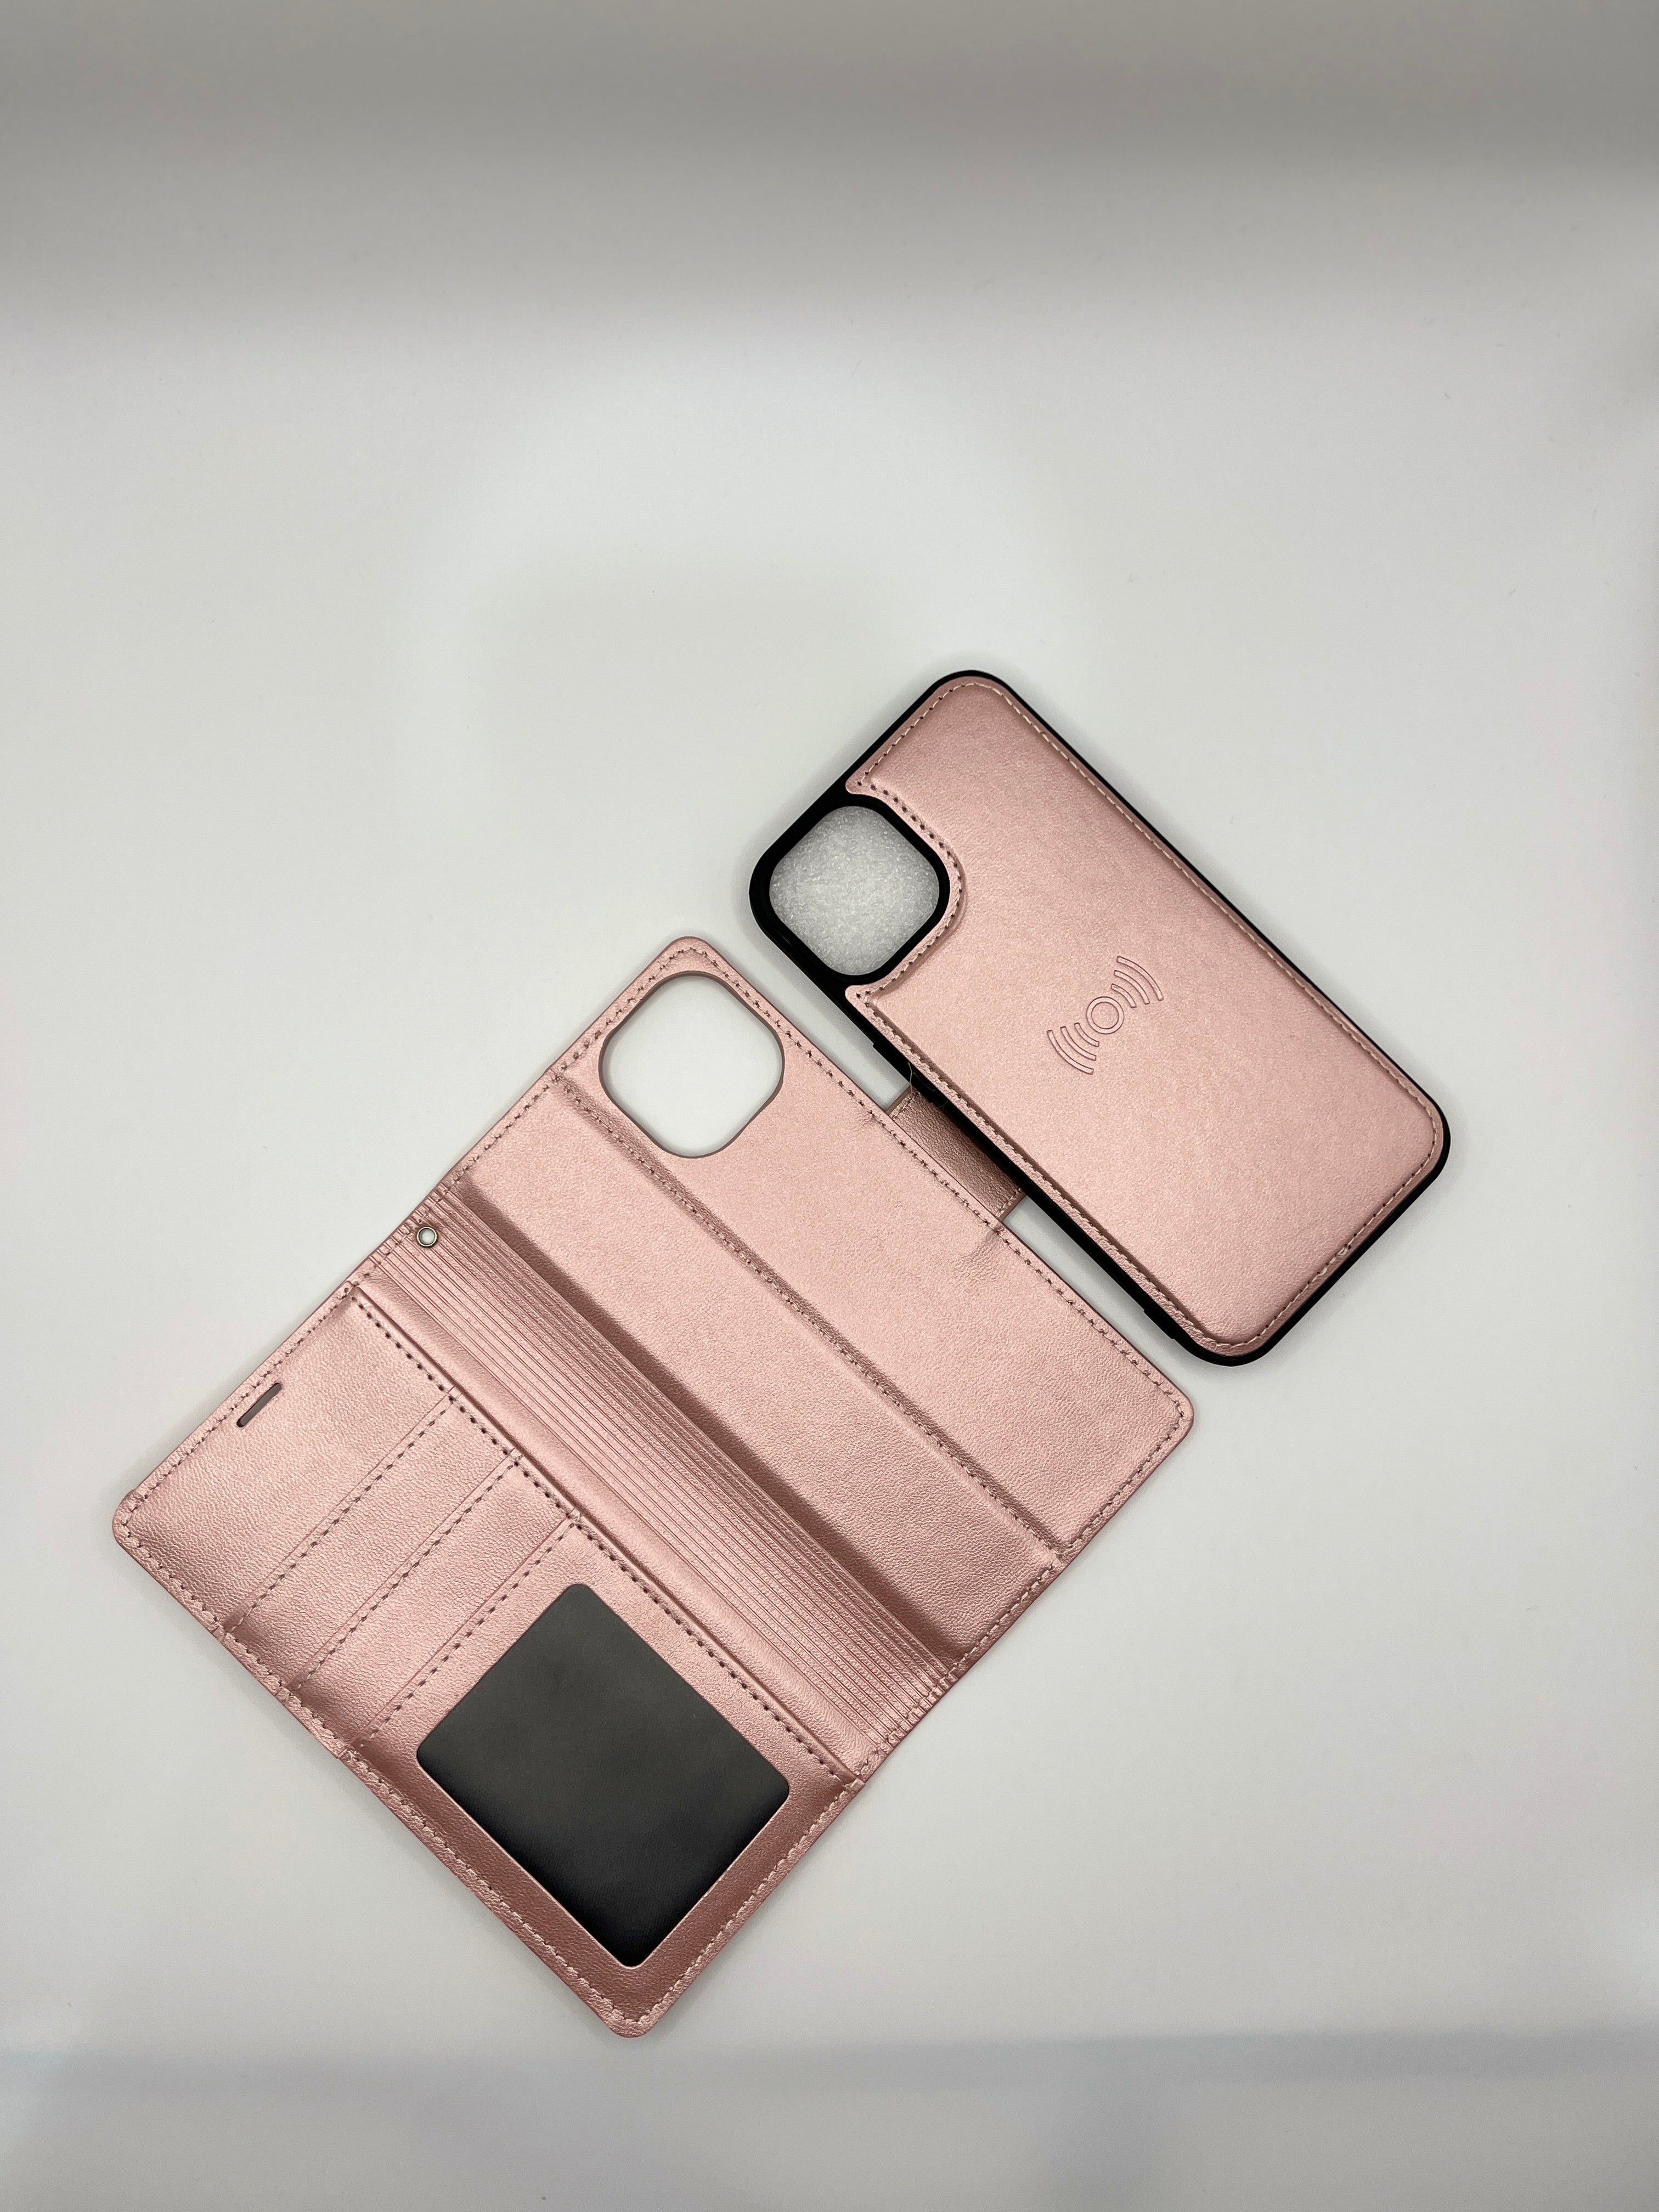 iPhone XR Hanman 2 In 1 Leather Wallet Case